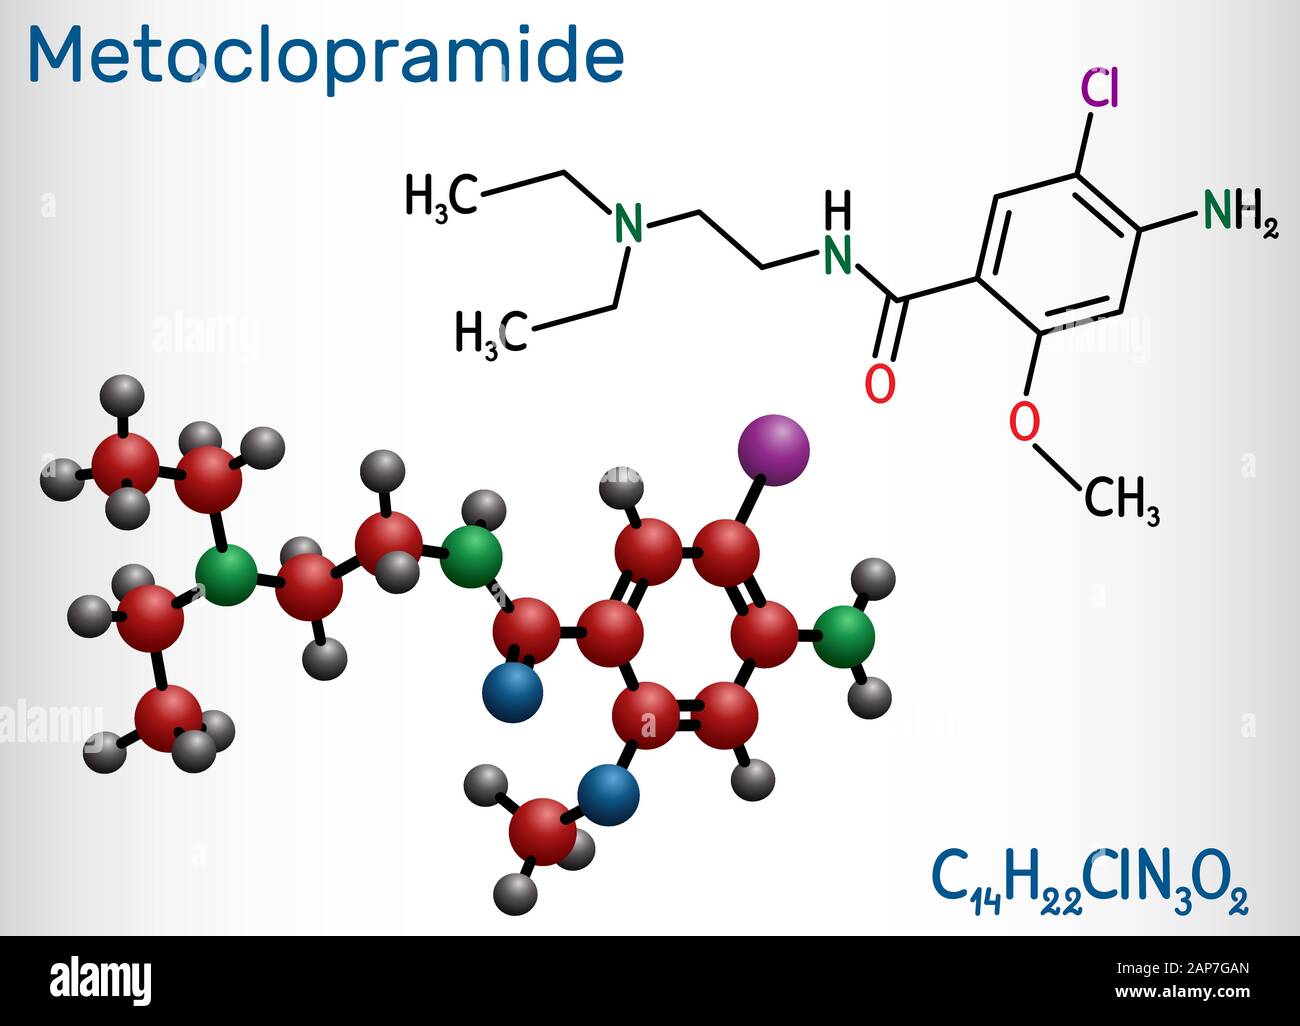 Metoclopramide, dopamina molecola antagonista. È usato per trattare la nausea, vomito, per aiutare con la malattia da reflusso gastroesofageo. Chemica strutturali Illustrazione Vettoriale